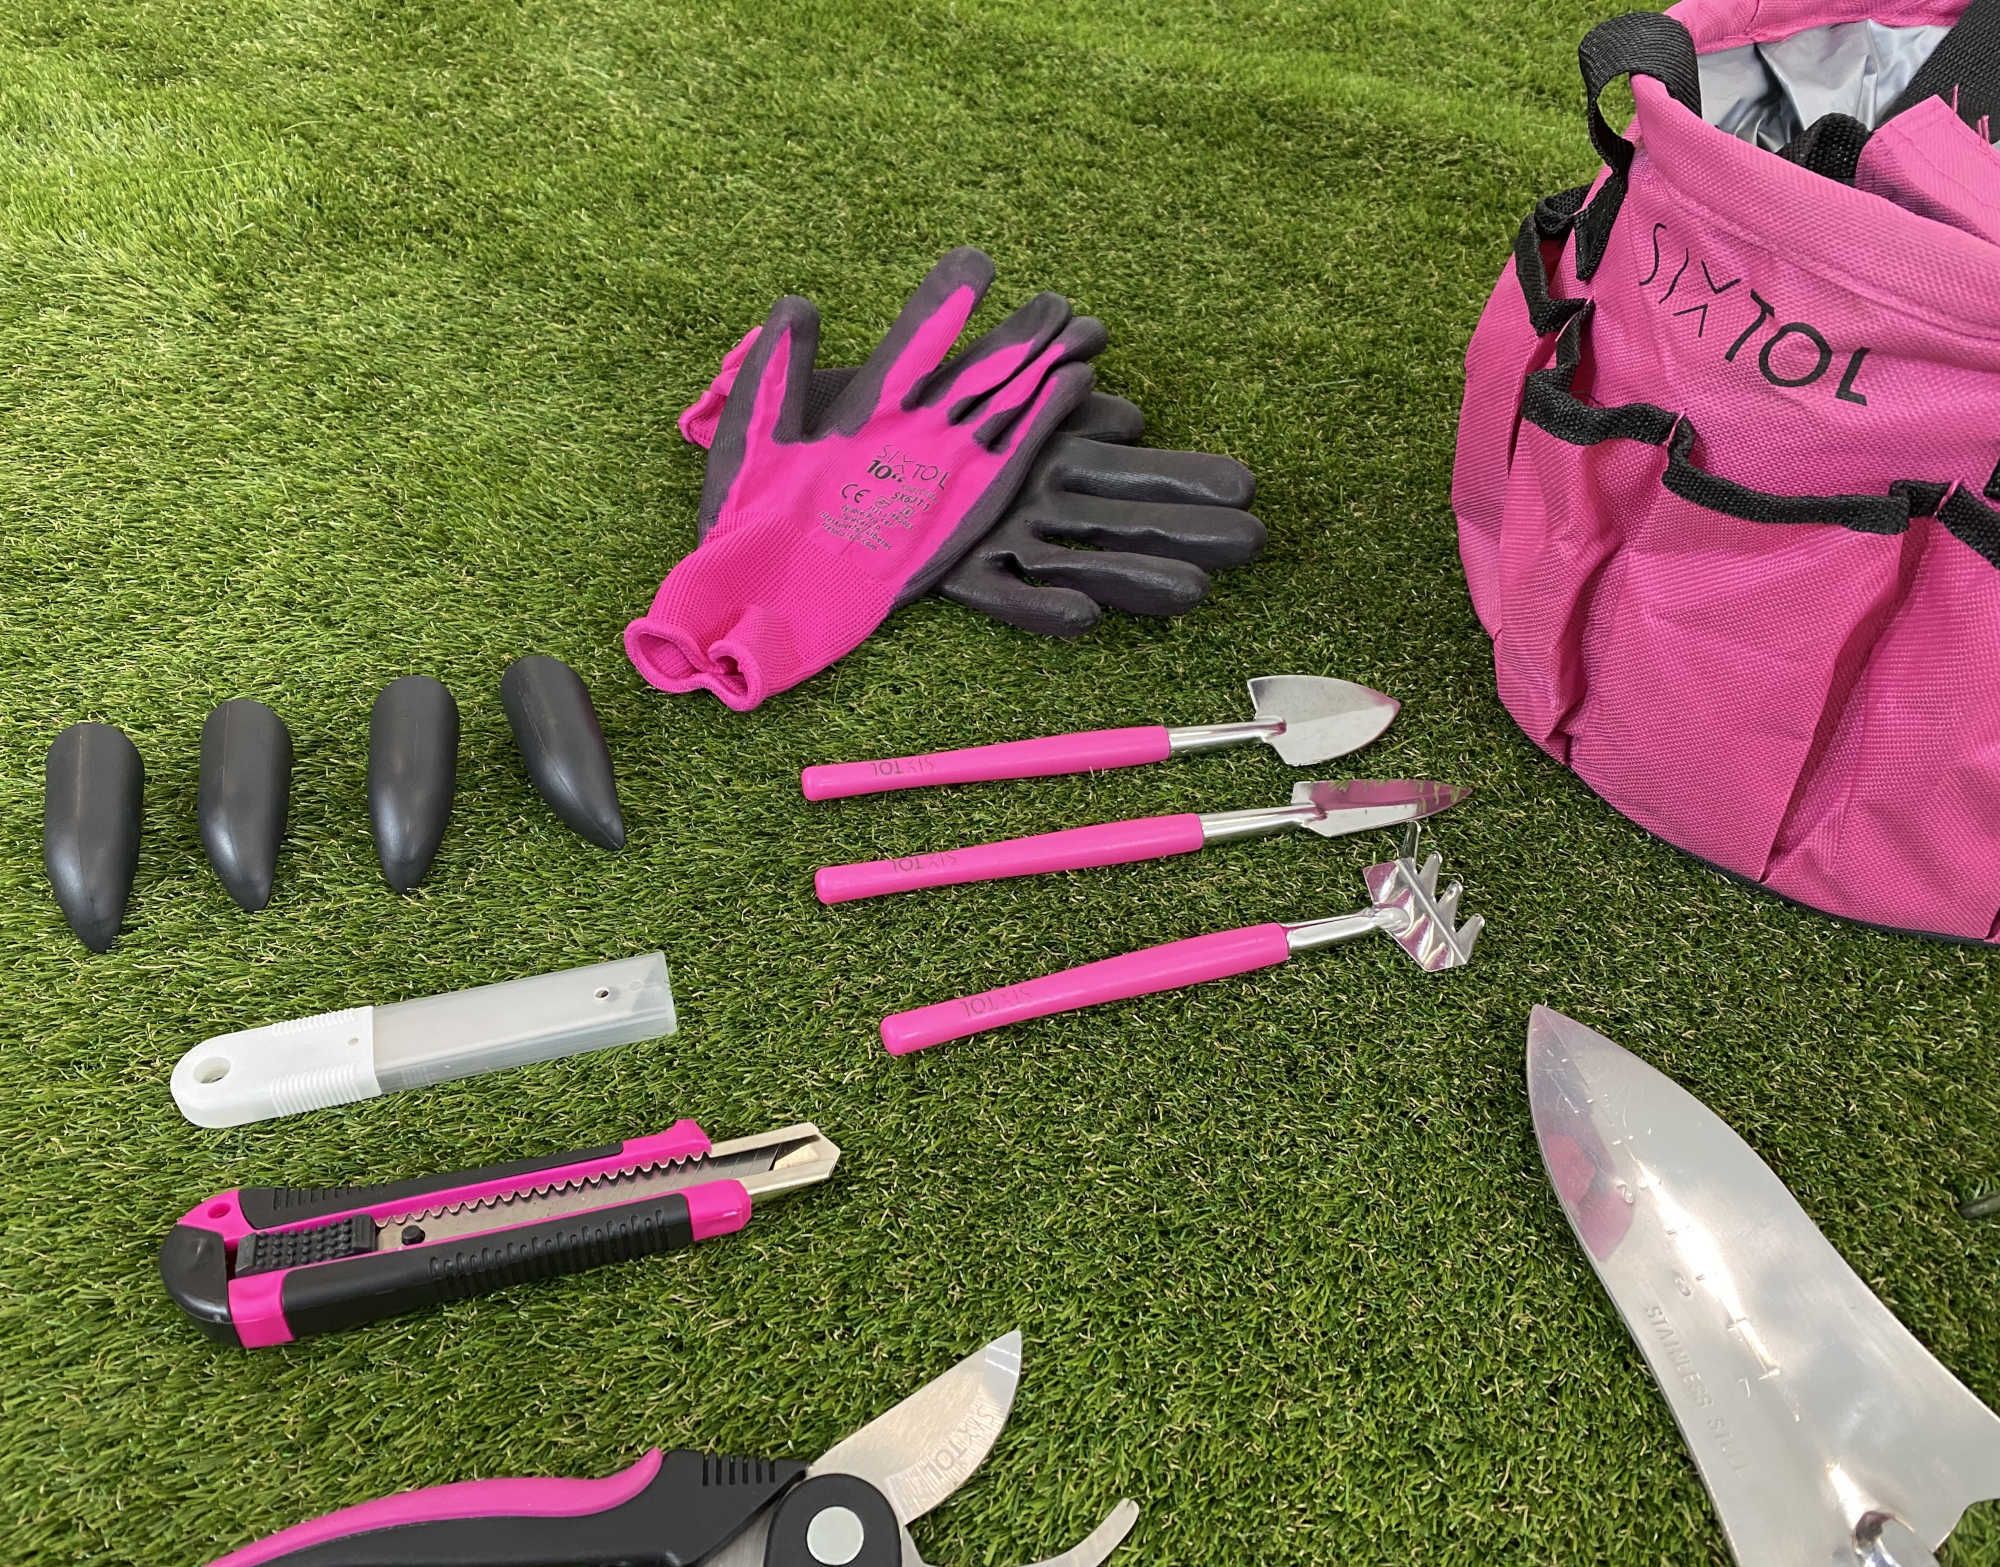 Sada zahradního nářadí Sixtol Garden Pink 10 rozložená na trávníku